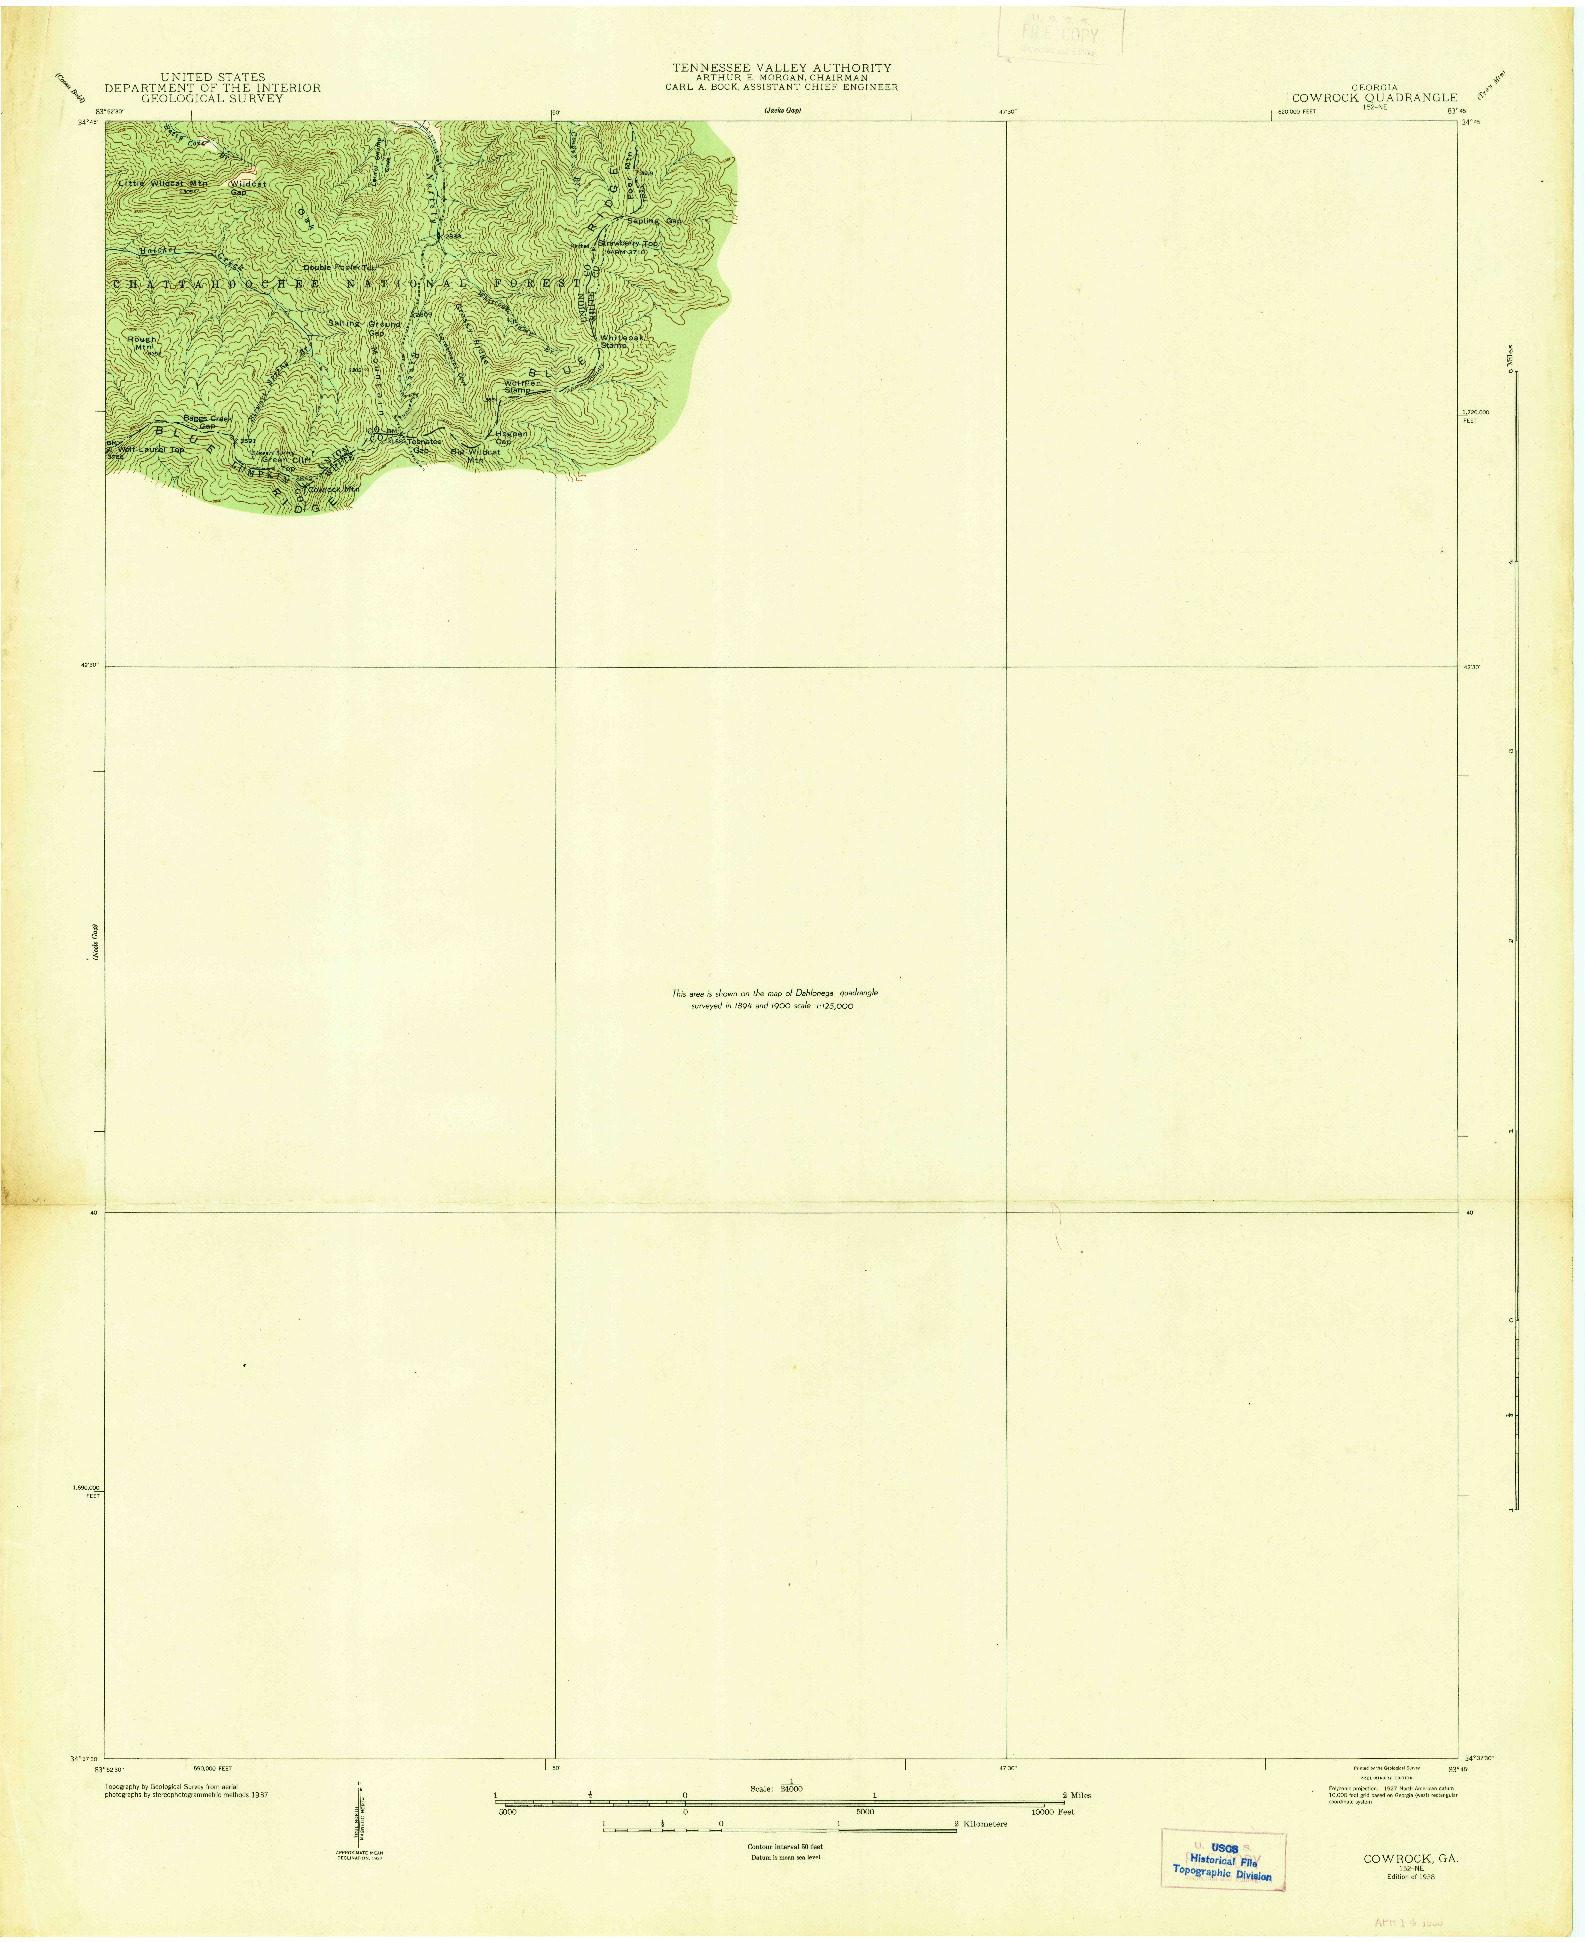 USGS 1:24000-SCALE QUADRANGLE FOR COWROCK, GA 1938